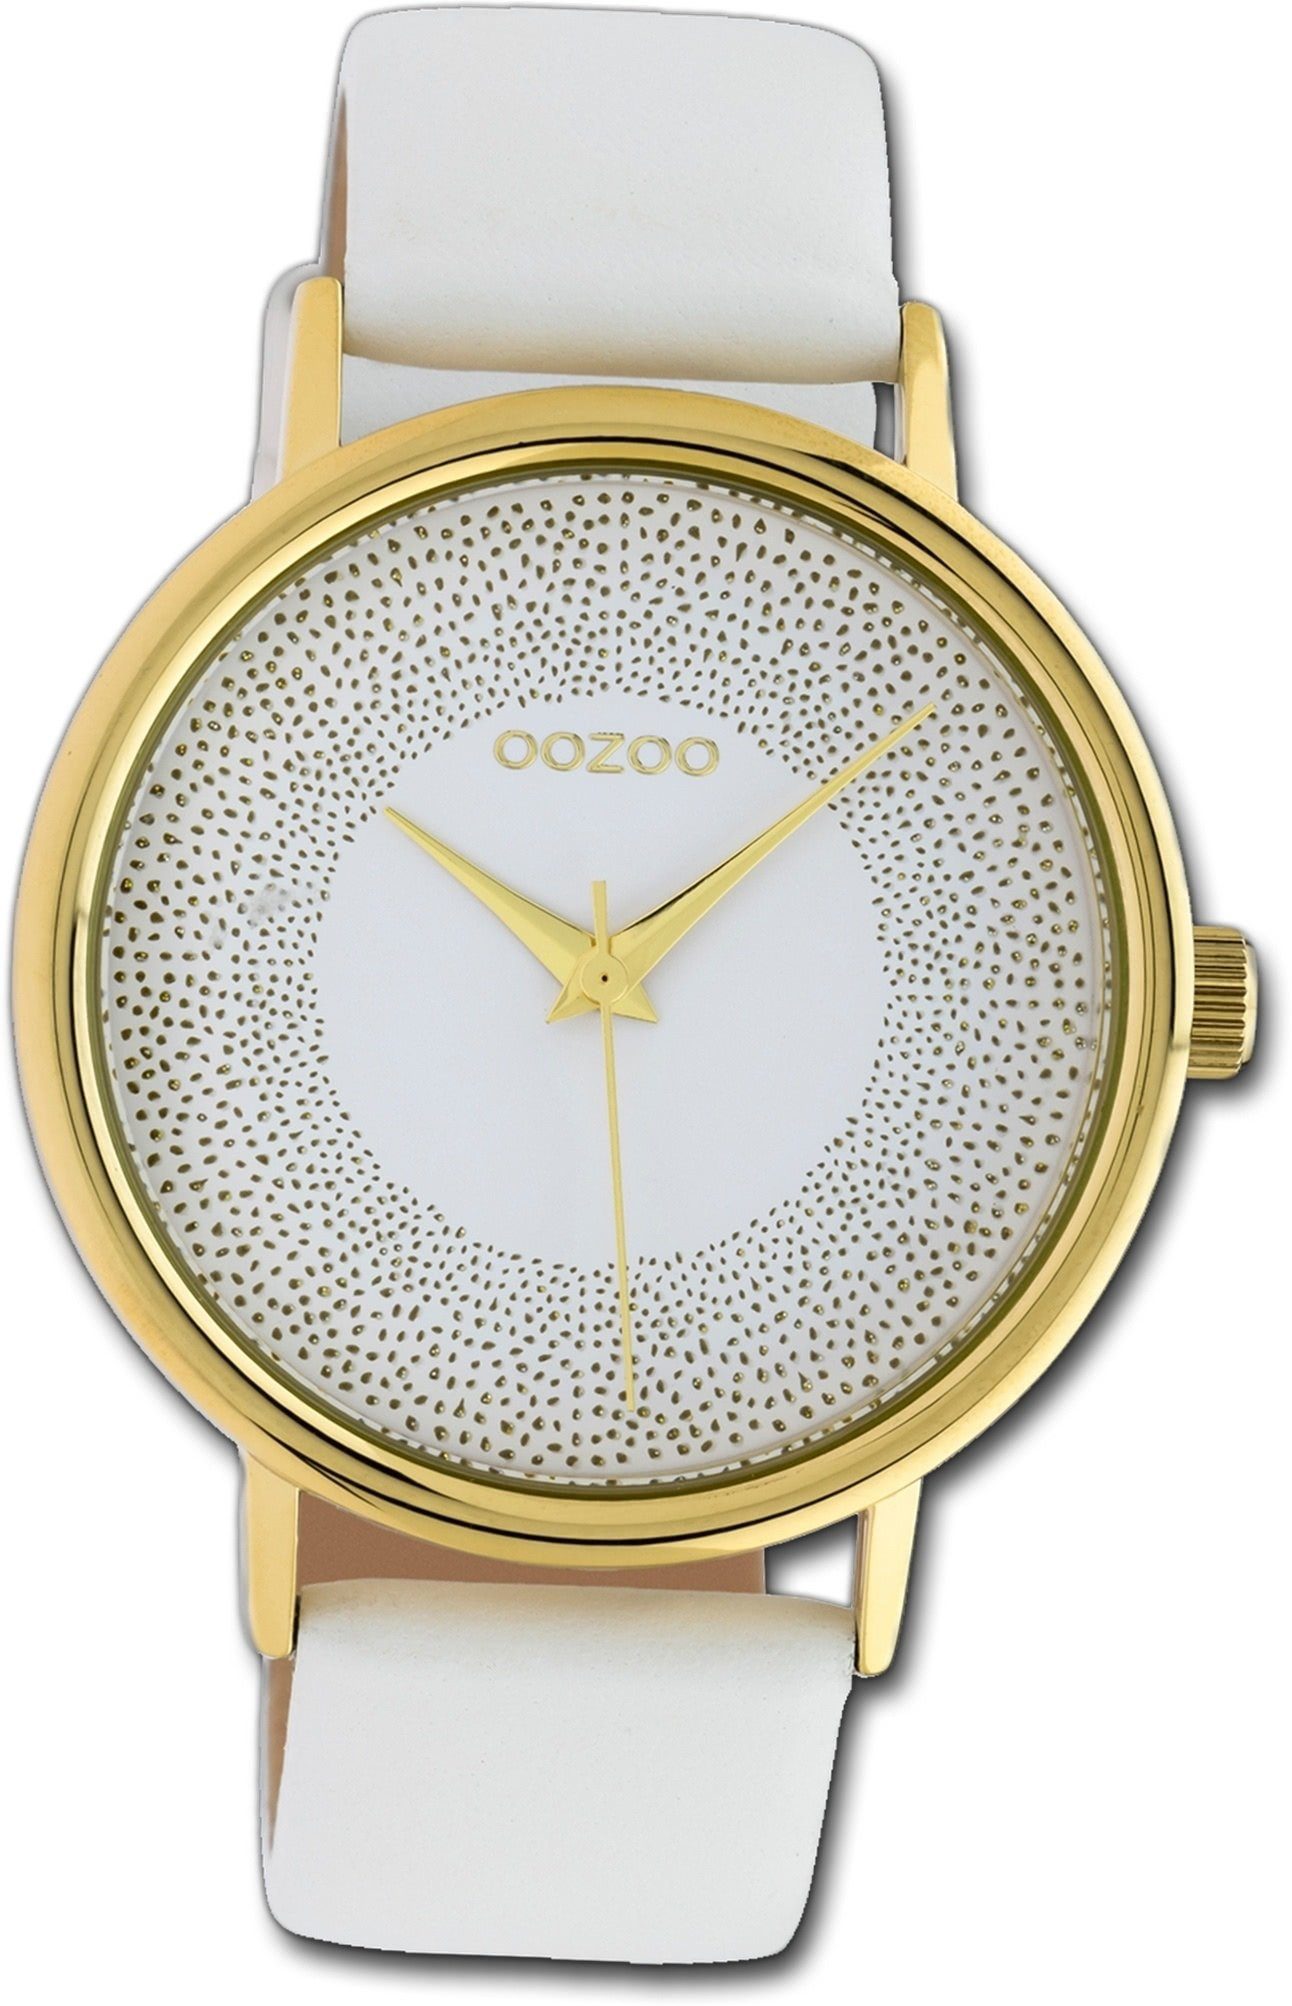 OOZOO Quarzuhr Oozoo Leder Damen Uhr C10576 Analog, Damenuhr Lederarmband weiß, rundes Gehäuse, groß (ca. 42mm)